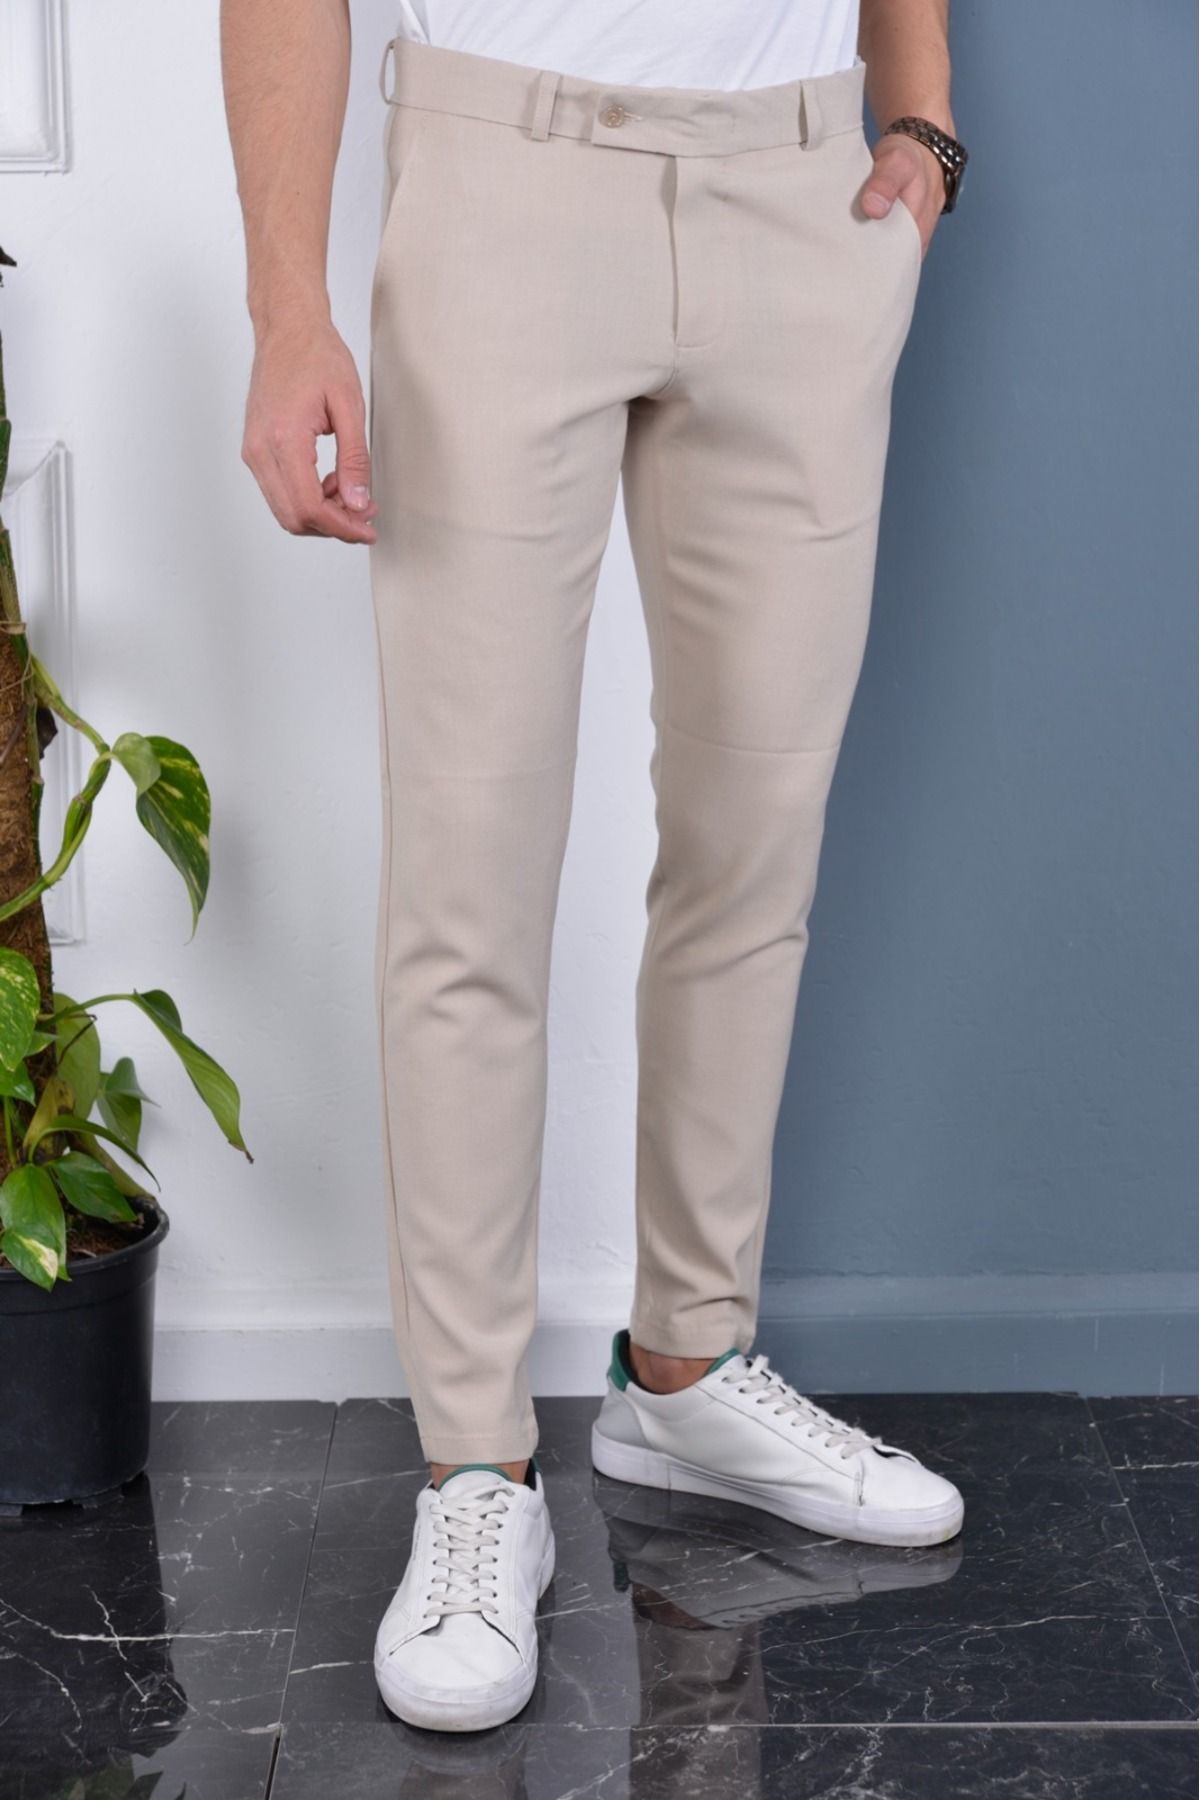 Gavazzi Erkek Krem Renk Italyan Kesim Kaliteli Esnek Likralı Bilek Boy Kumaş Pantolon